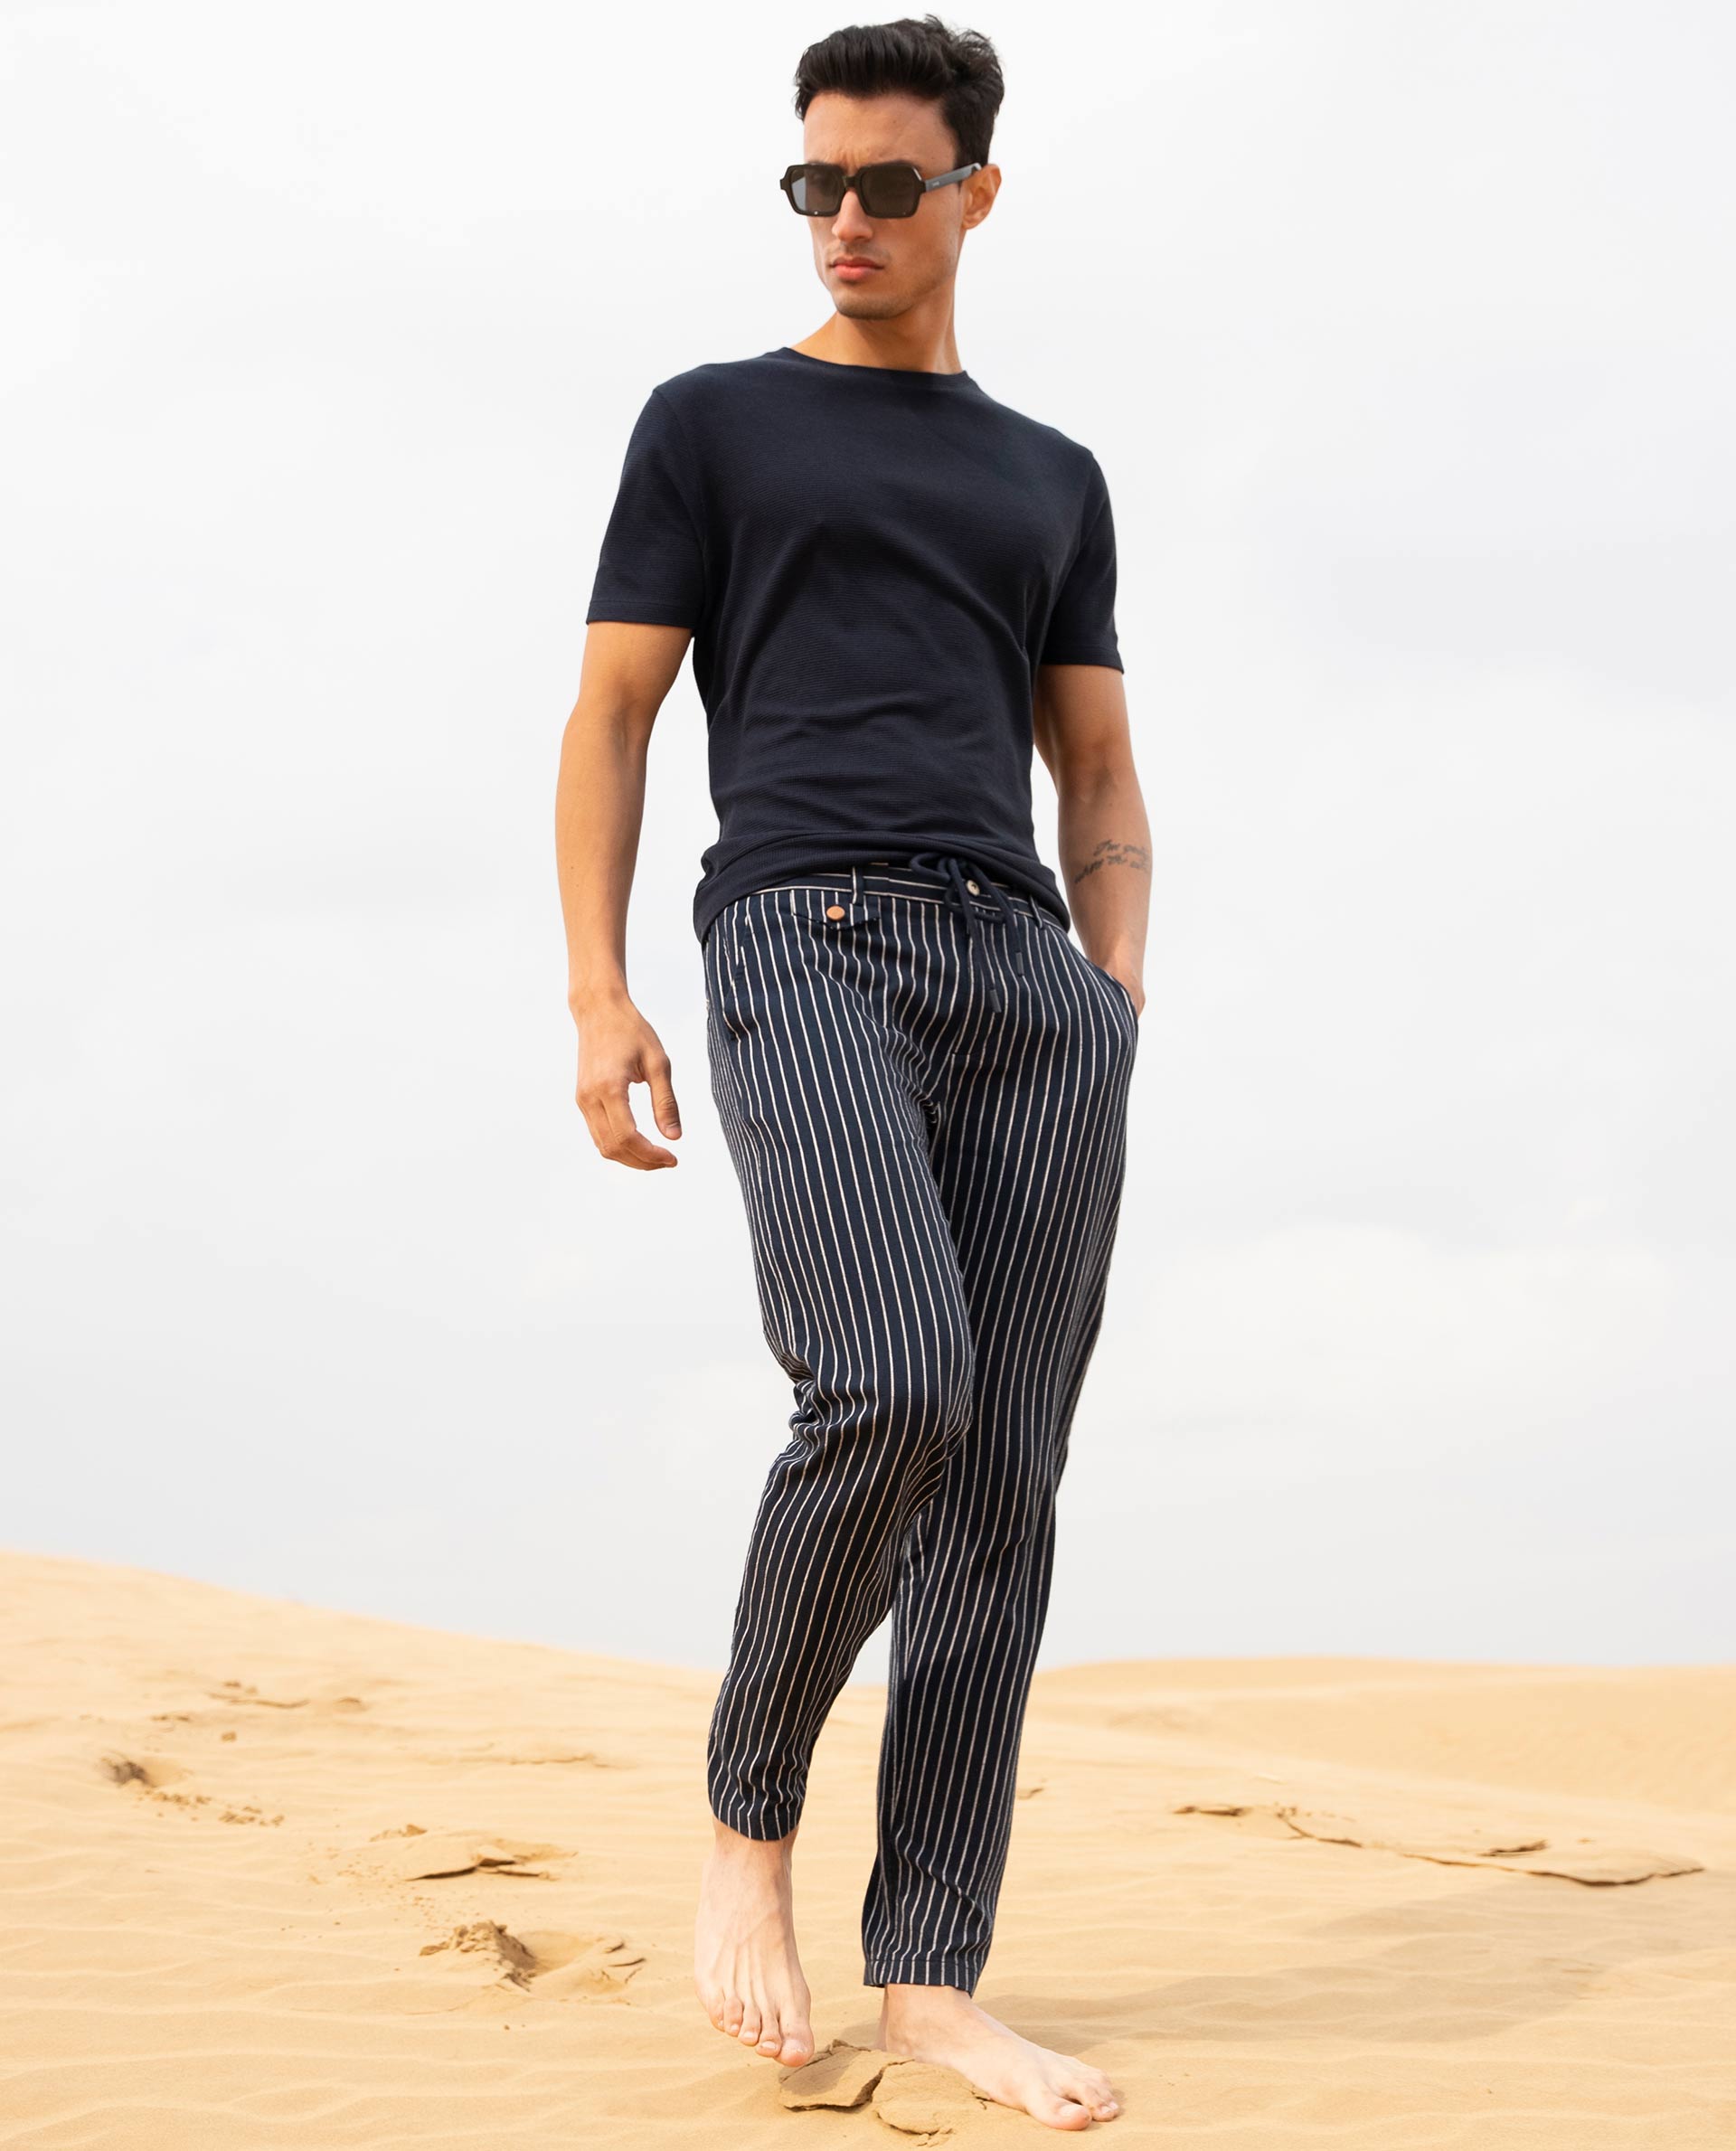 EndoraDore Men's Linen Cotton Pants Slim Fit Joggers Pants Athletic Workout  Elastic Trousers Pants Beach Vacation Black at Amazon Men's Clothing store